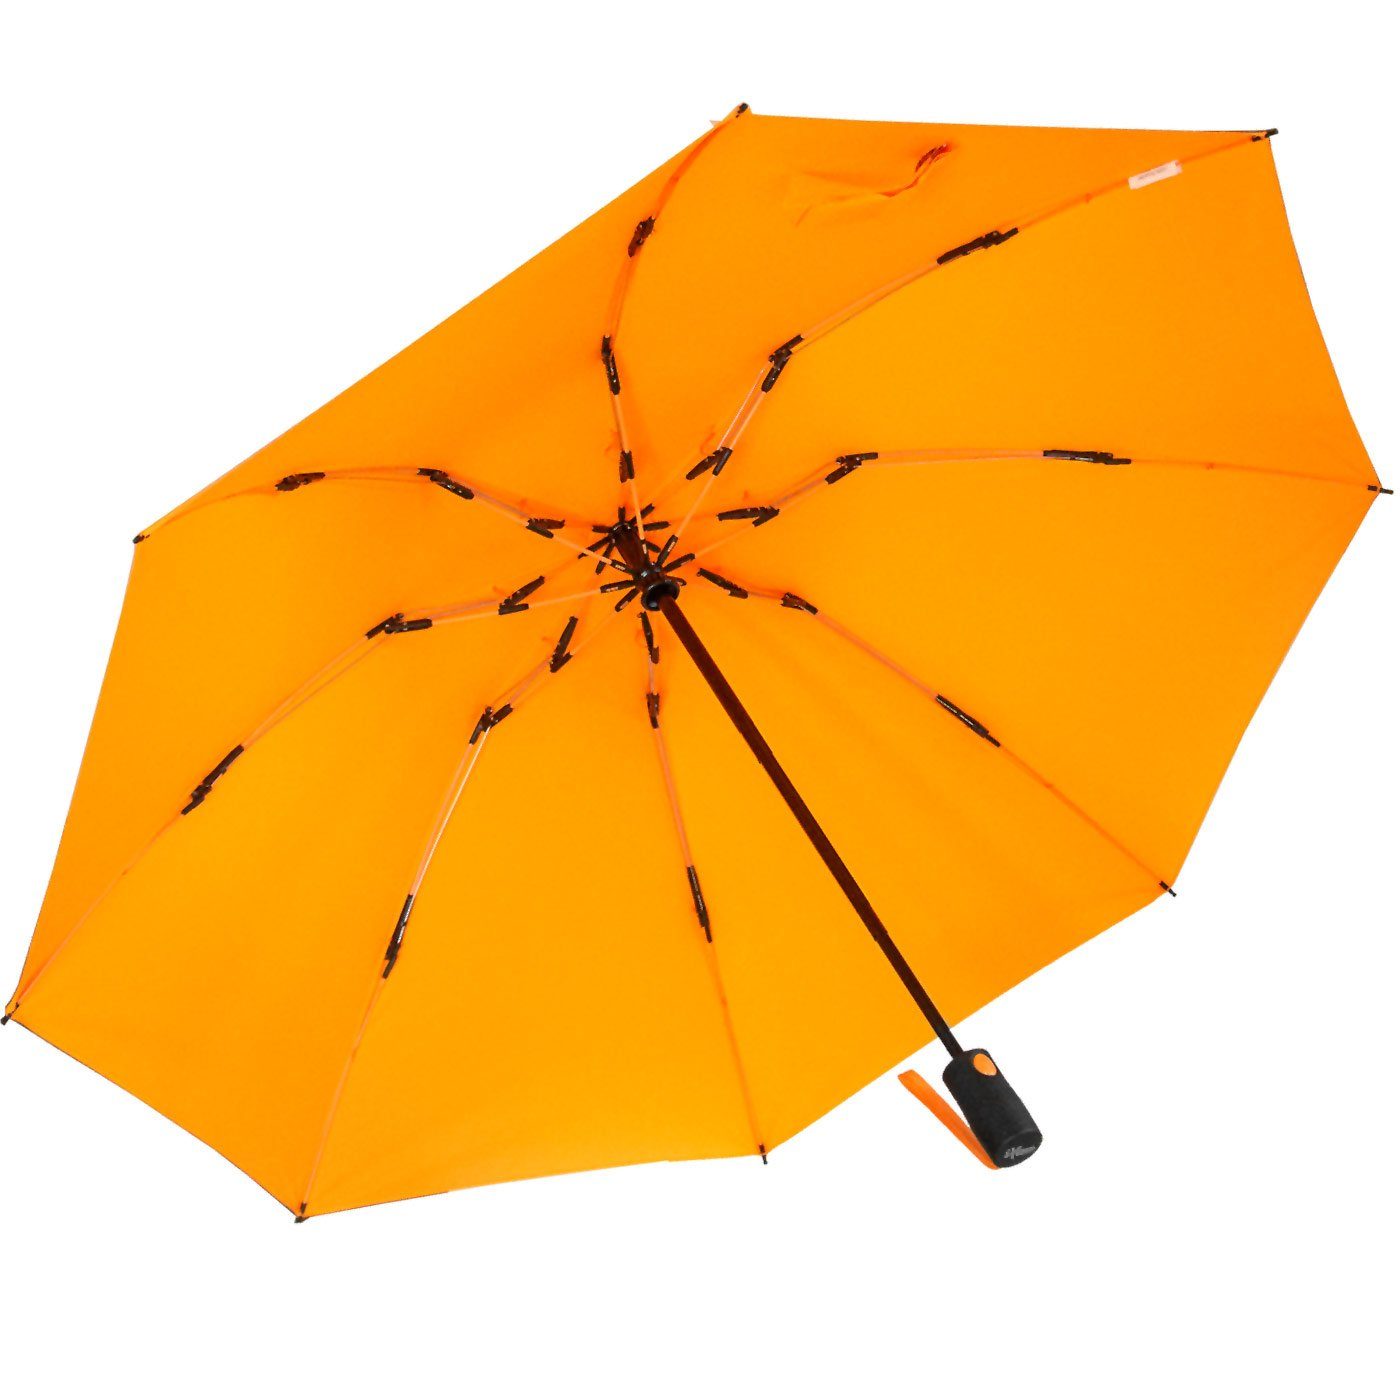 stabilen mit Reverse Taschenregenschirm öffnender iX-brella Speichen bunten umgekehrt neon-orange Fiberglas-Automatiksch,